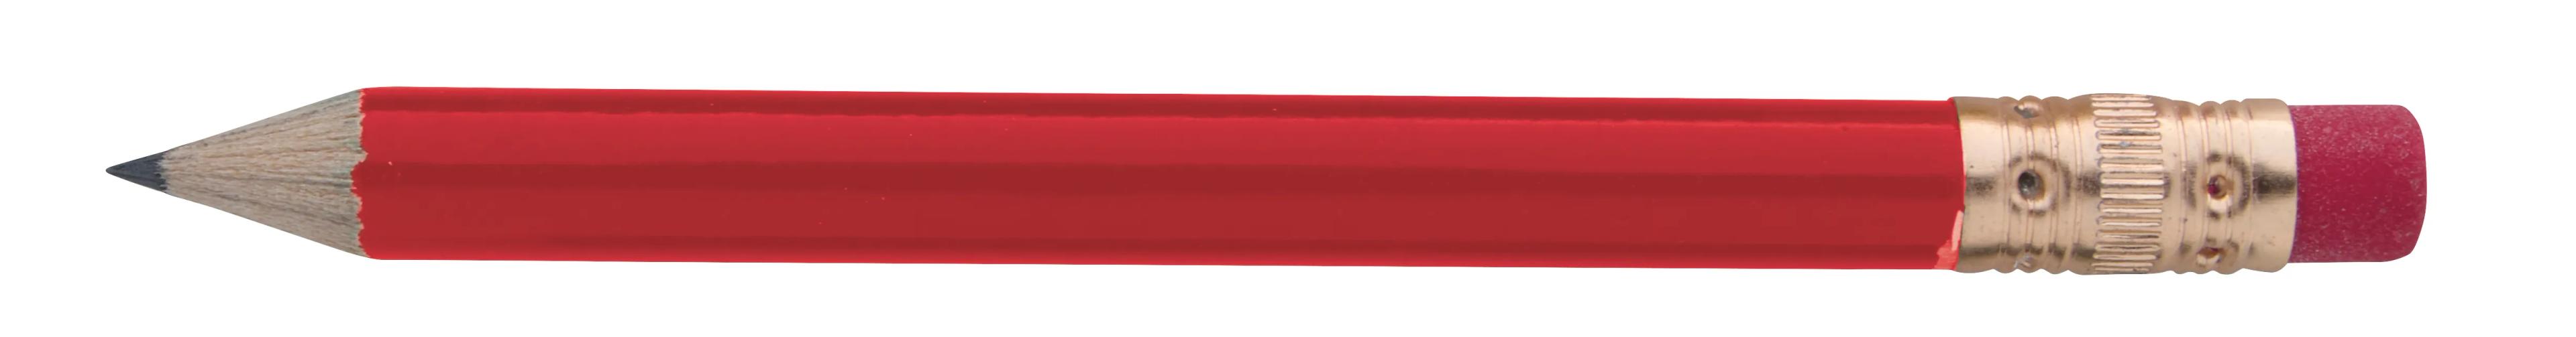 Round Golf Pencil with Eraser 3 of 13